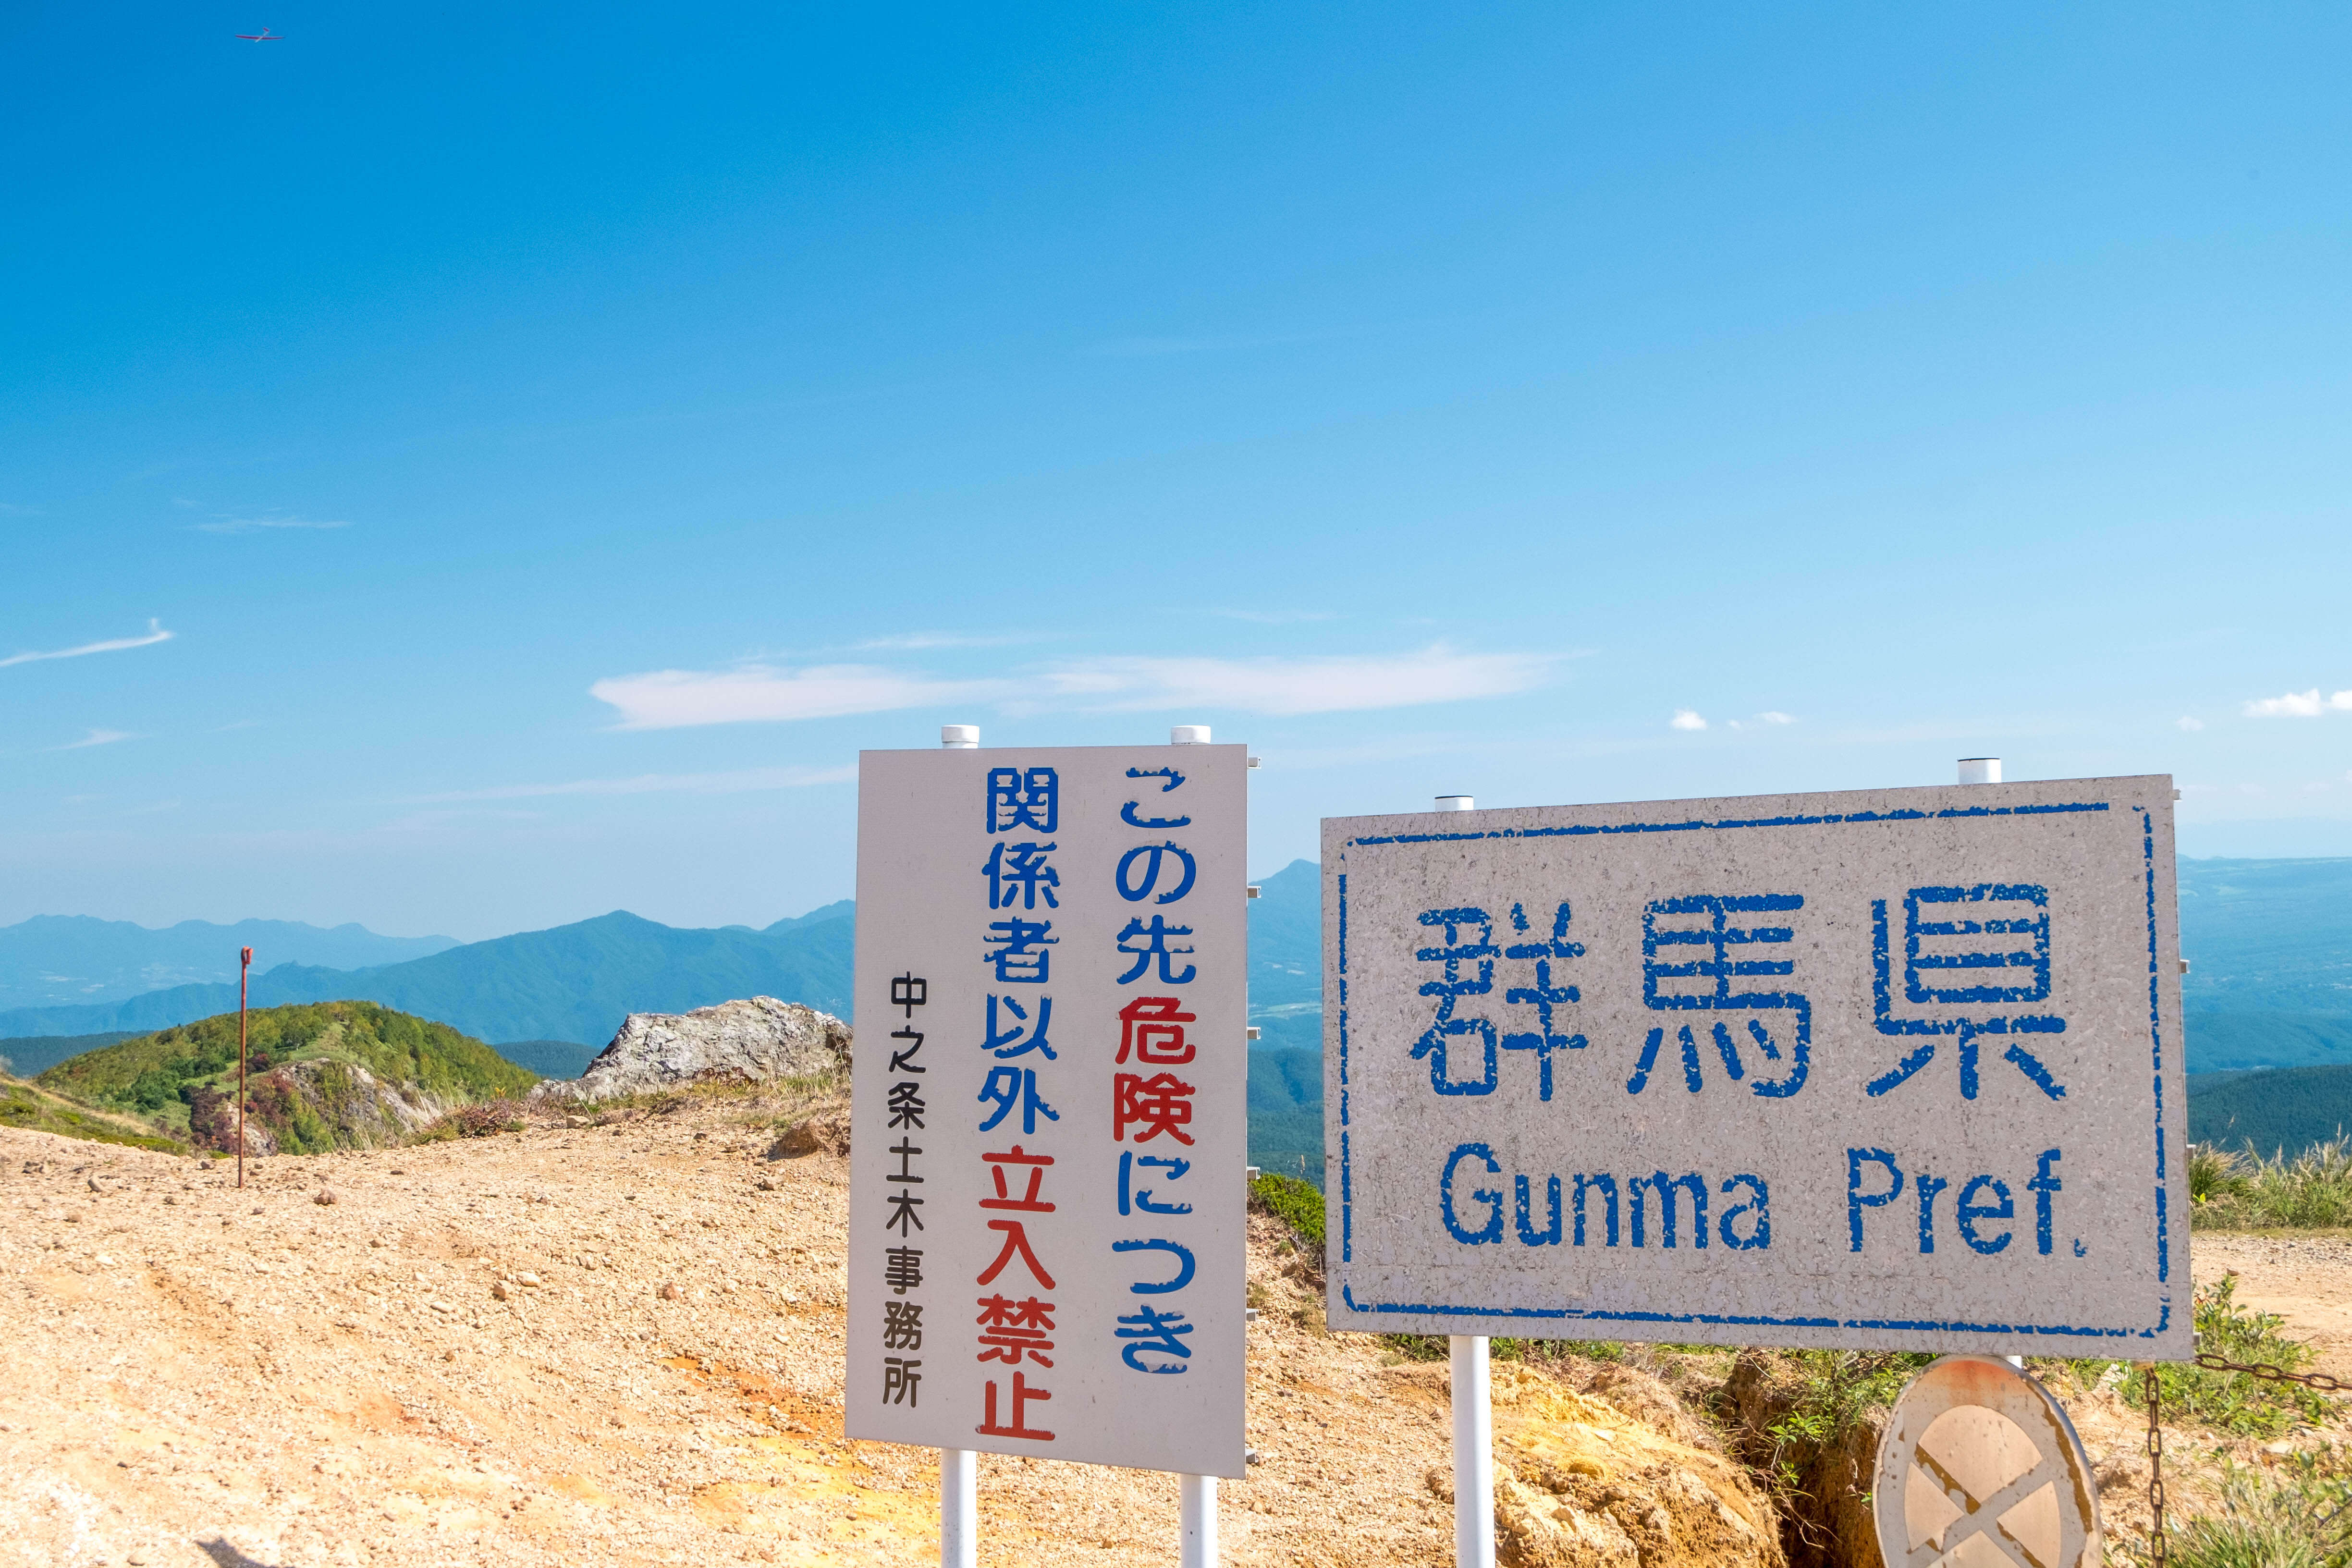 日本の絶景 関東の秘境こと 毛無峠 と 破風岳 のアクセスなど詳細